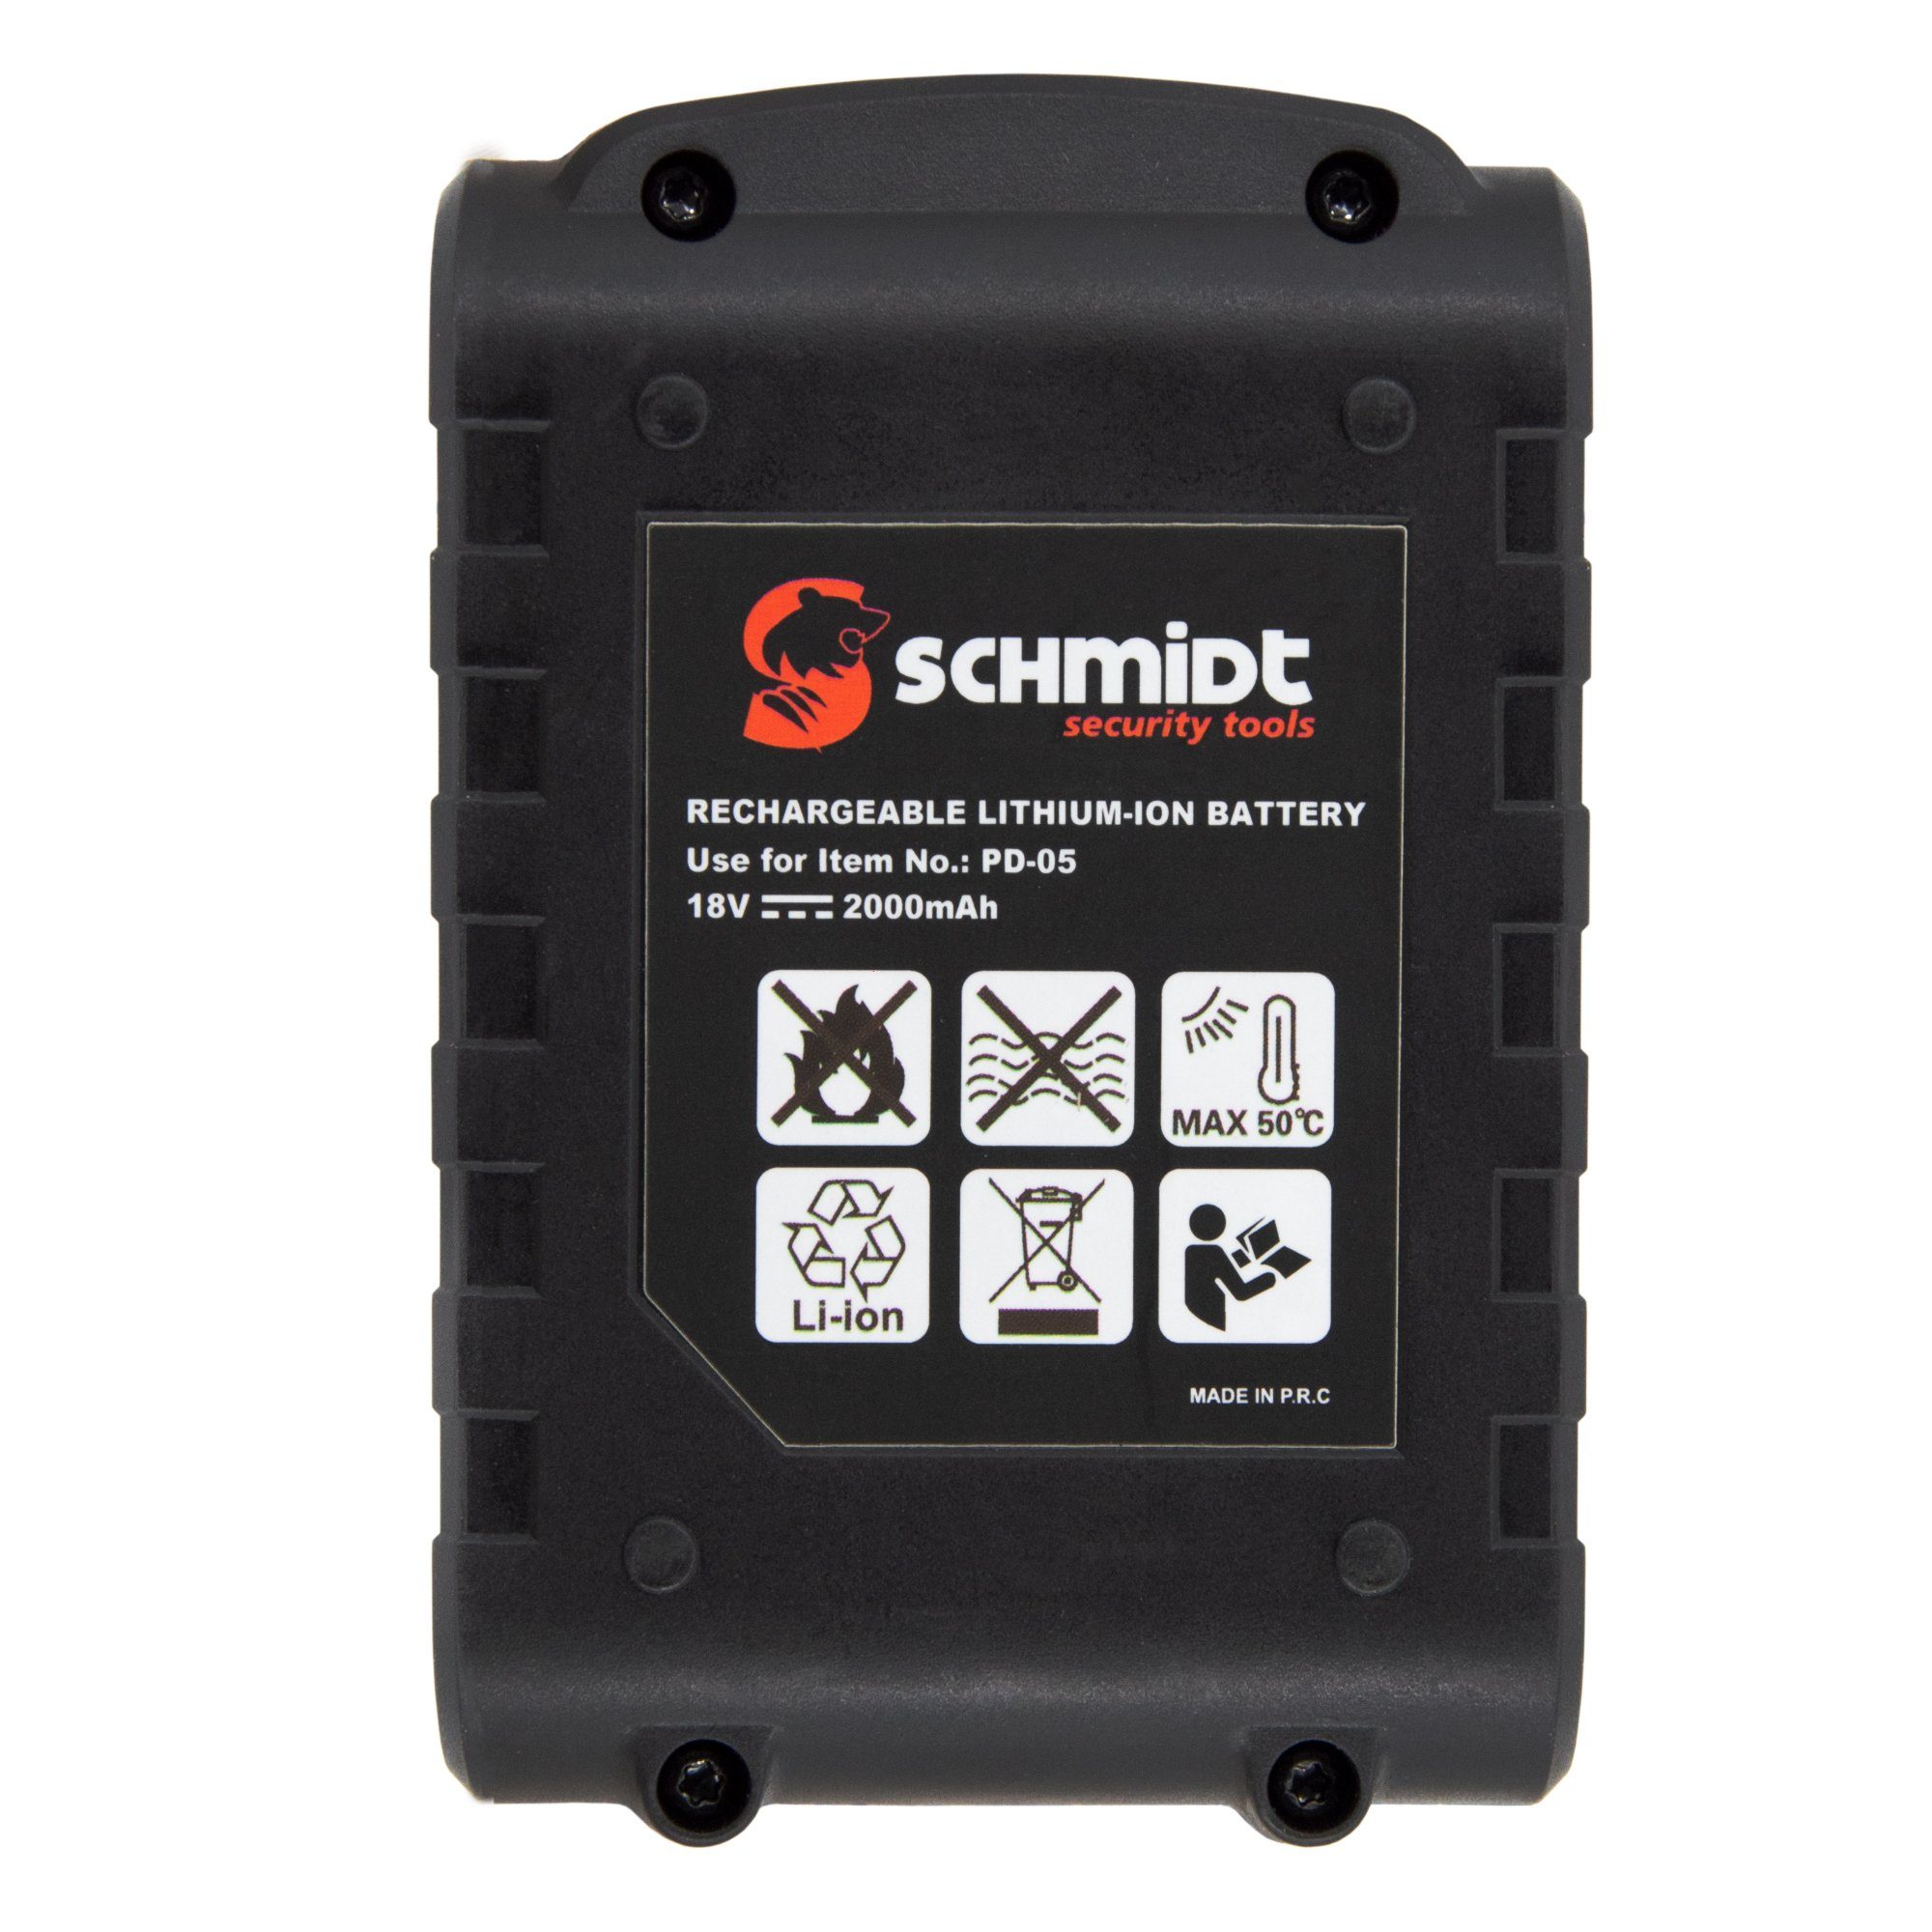 2.0Ah Batterie security für SCHMIDT 18V Schlagbohrschrauber Akku tools PD-05 Li-Ion Akku-Schrauber